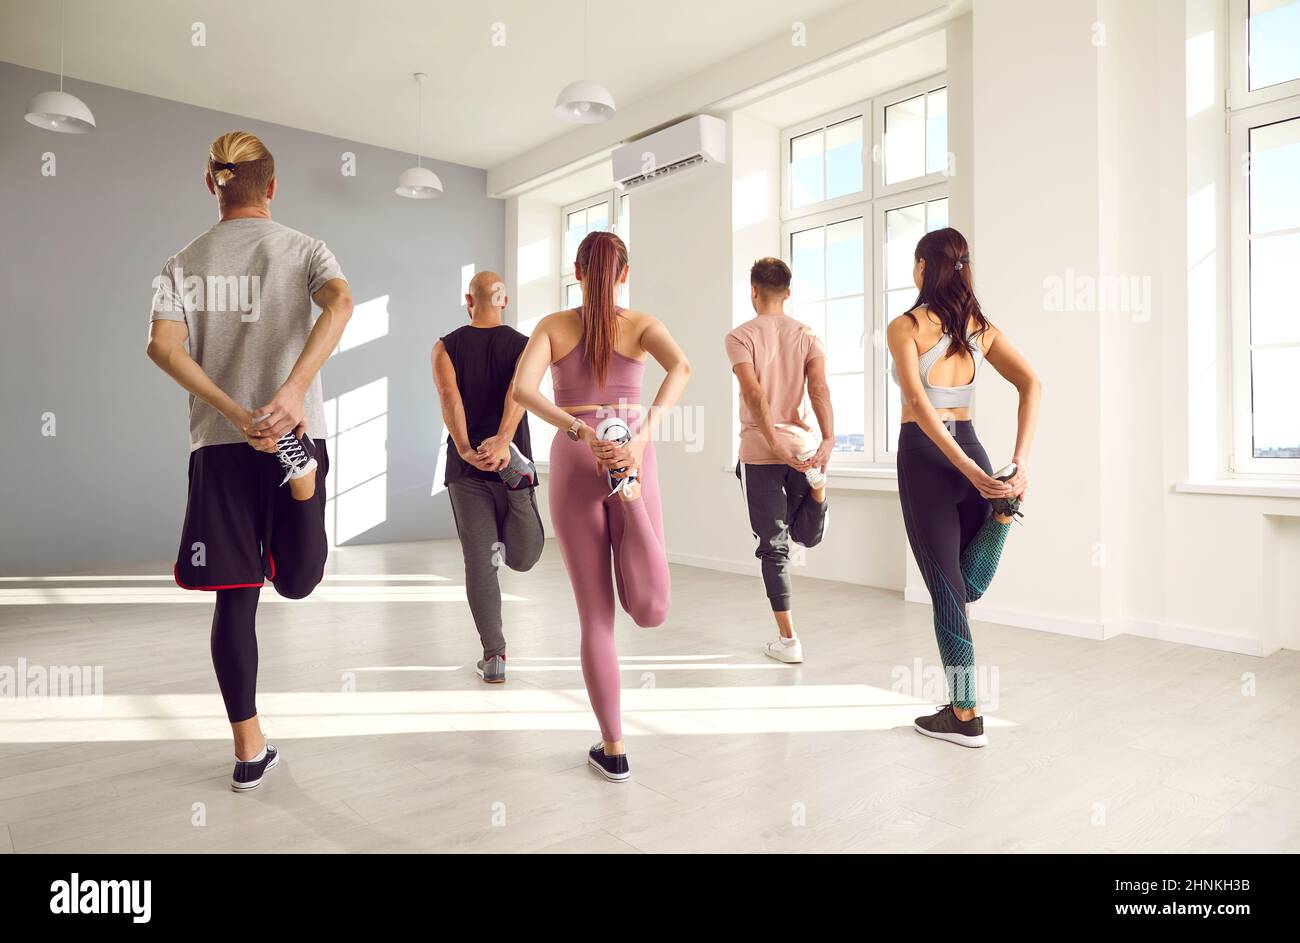 Eine Gruppe junger Menschen, die während eines Fitnesstrainings im Fitnessstudio Stretching-Übungen machen Stockfoto